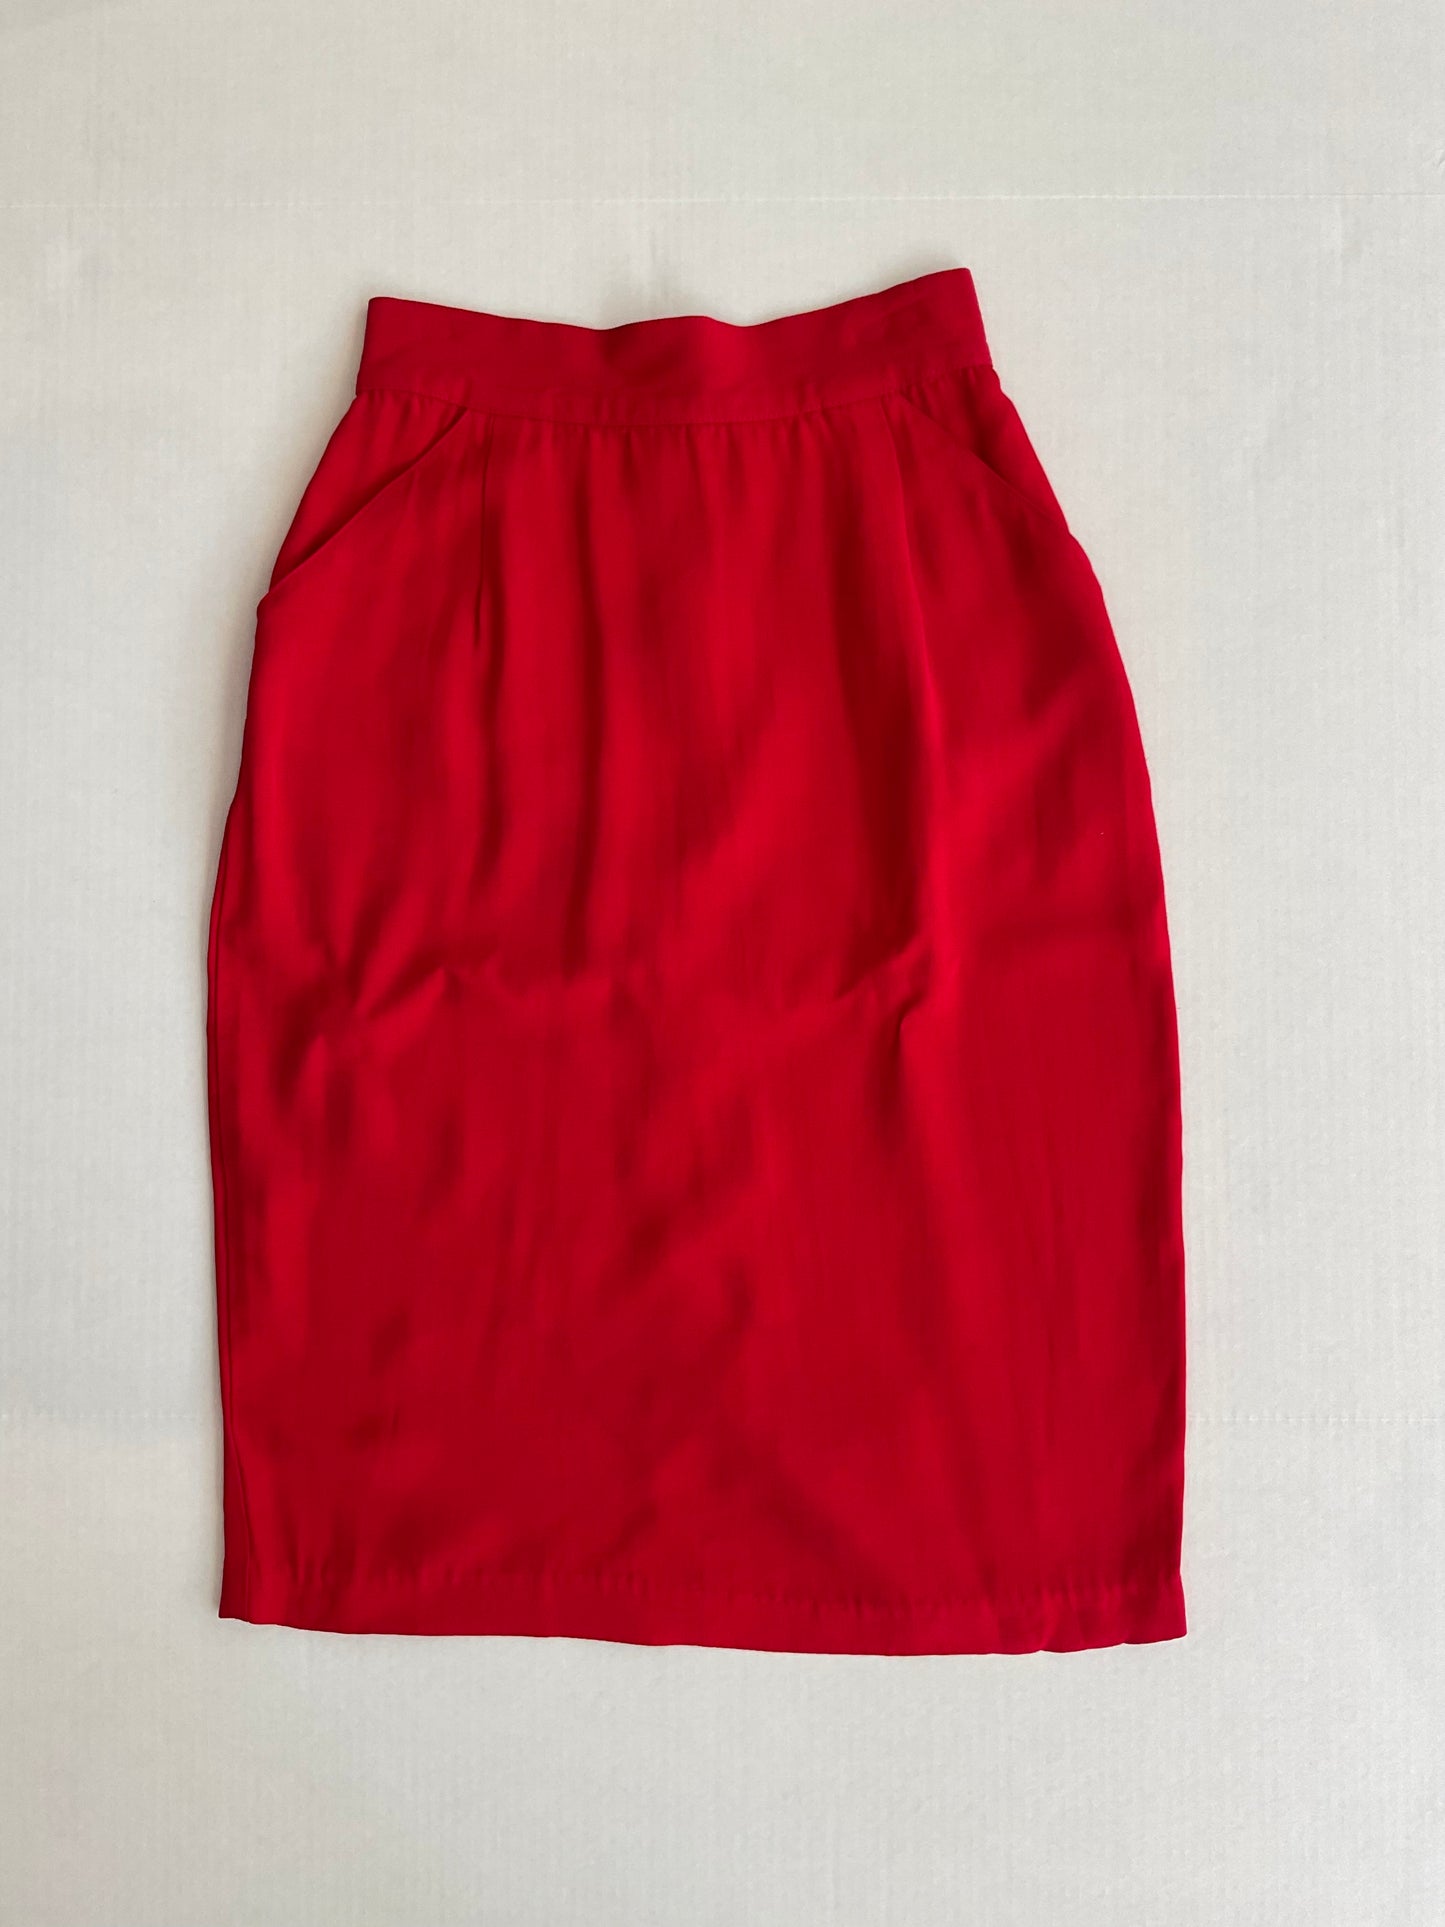 Vintage Bottom ~ Red Skirt